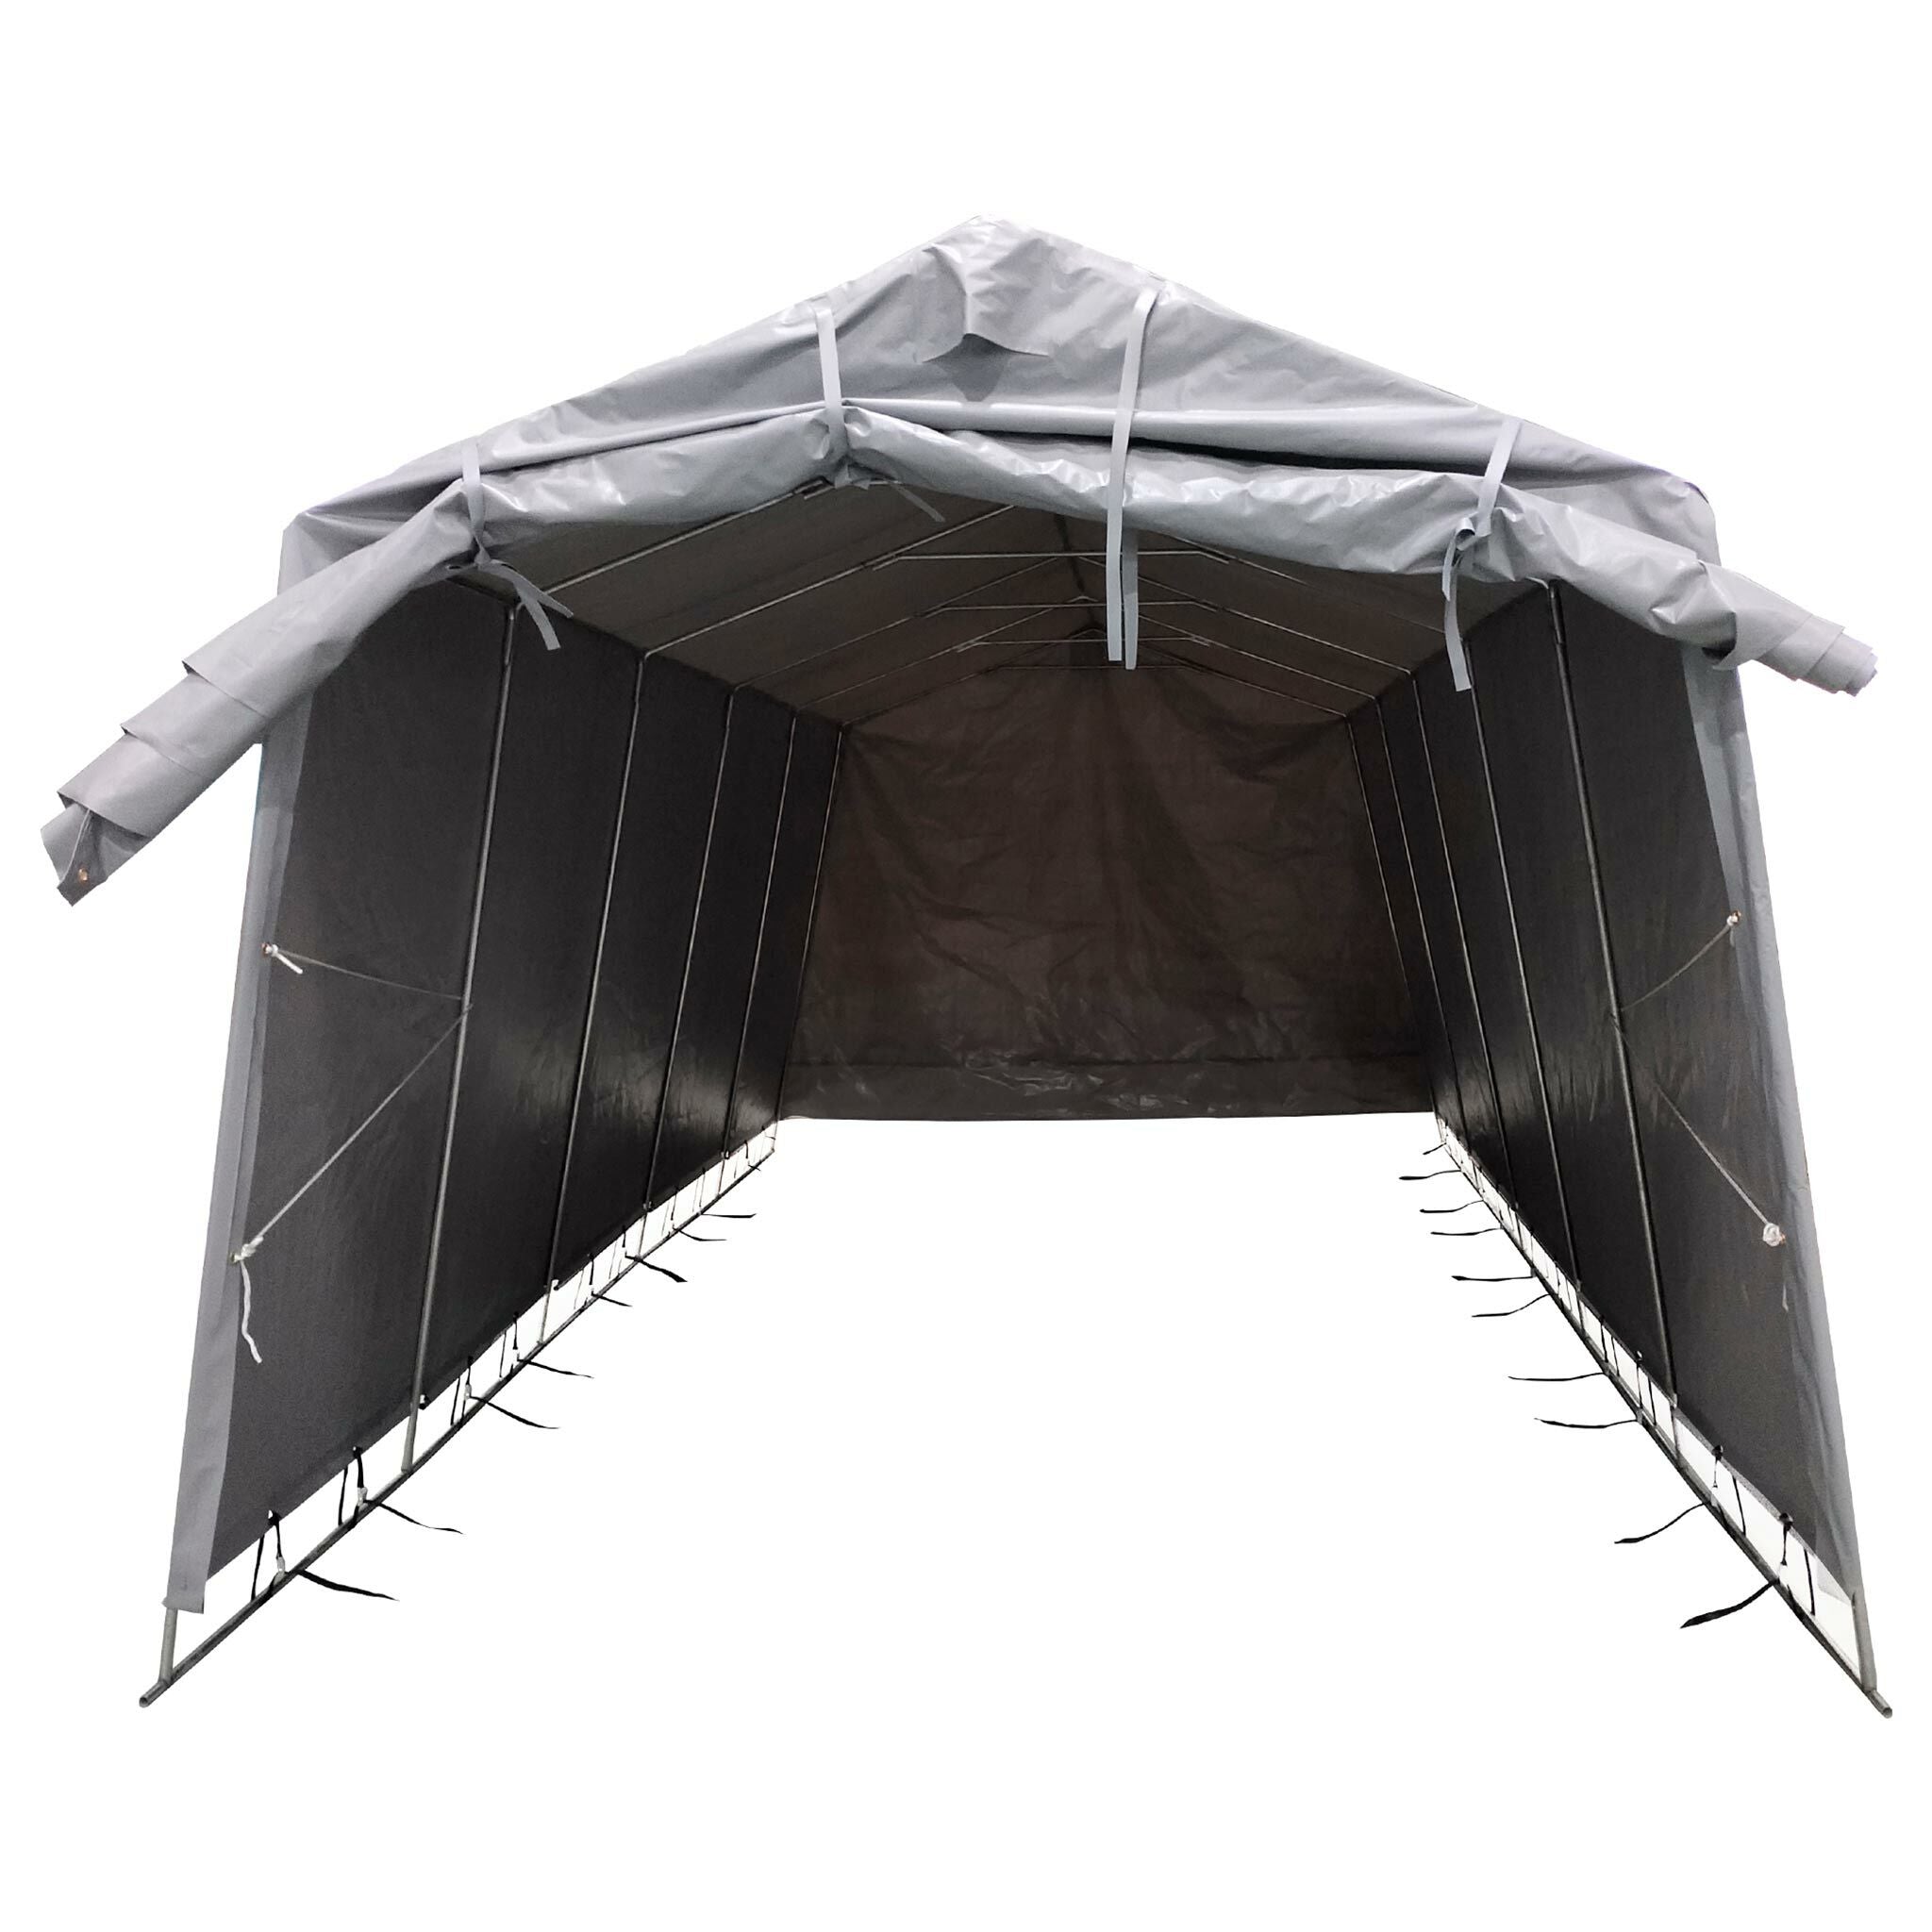 Fornorth Tente Garage 3,2x6m, Gris clair - 899,00 EUR - Nordic ProStore